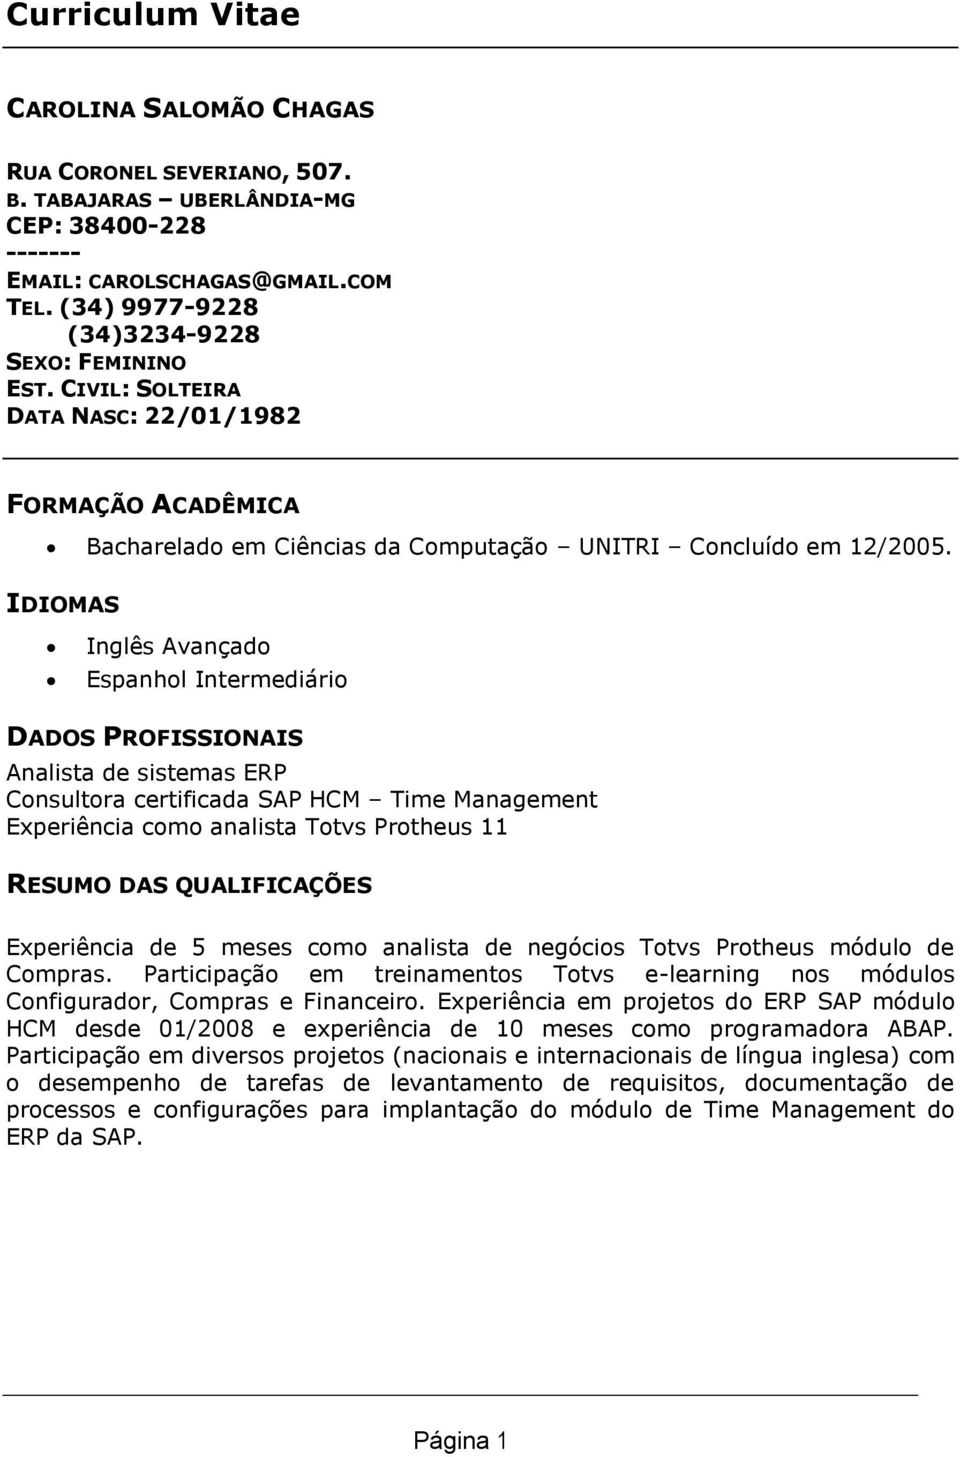 IDIOMAS Inglês Avançado Espanhol Intermediário DADOS PROFISSIONAIS Analista de sistemas ERP Consultora certificada SAP HCM Time Management Experiência como analista Totvs Protheus 11 RESUMO DAS